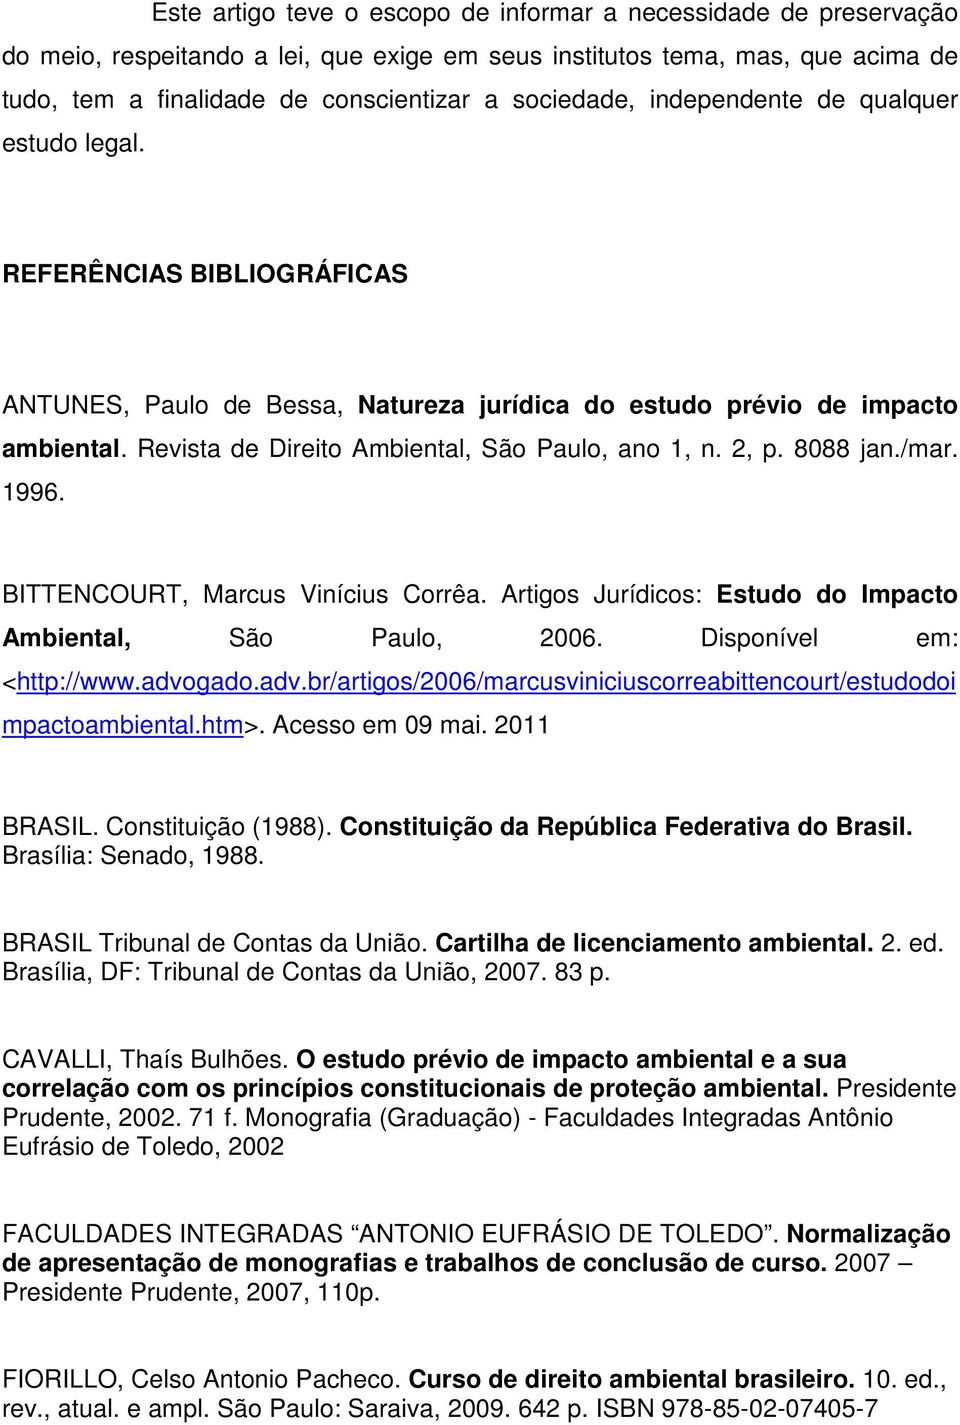 Revista de Direito Ambiental, São Paulo, ano 1, n. 2, p. 8088 jan./mar. 1996. BITTENCOURT, Marcus Vinícius Corrêa. Artigos Jurídicos: Estudo do Impacto Ambiental, São Paulo, 2006.